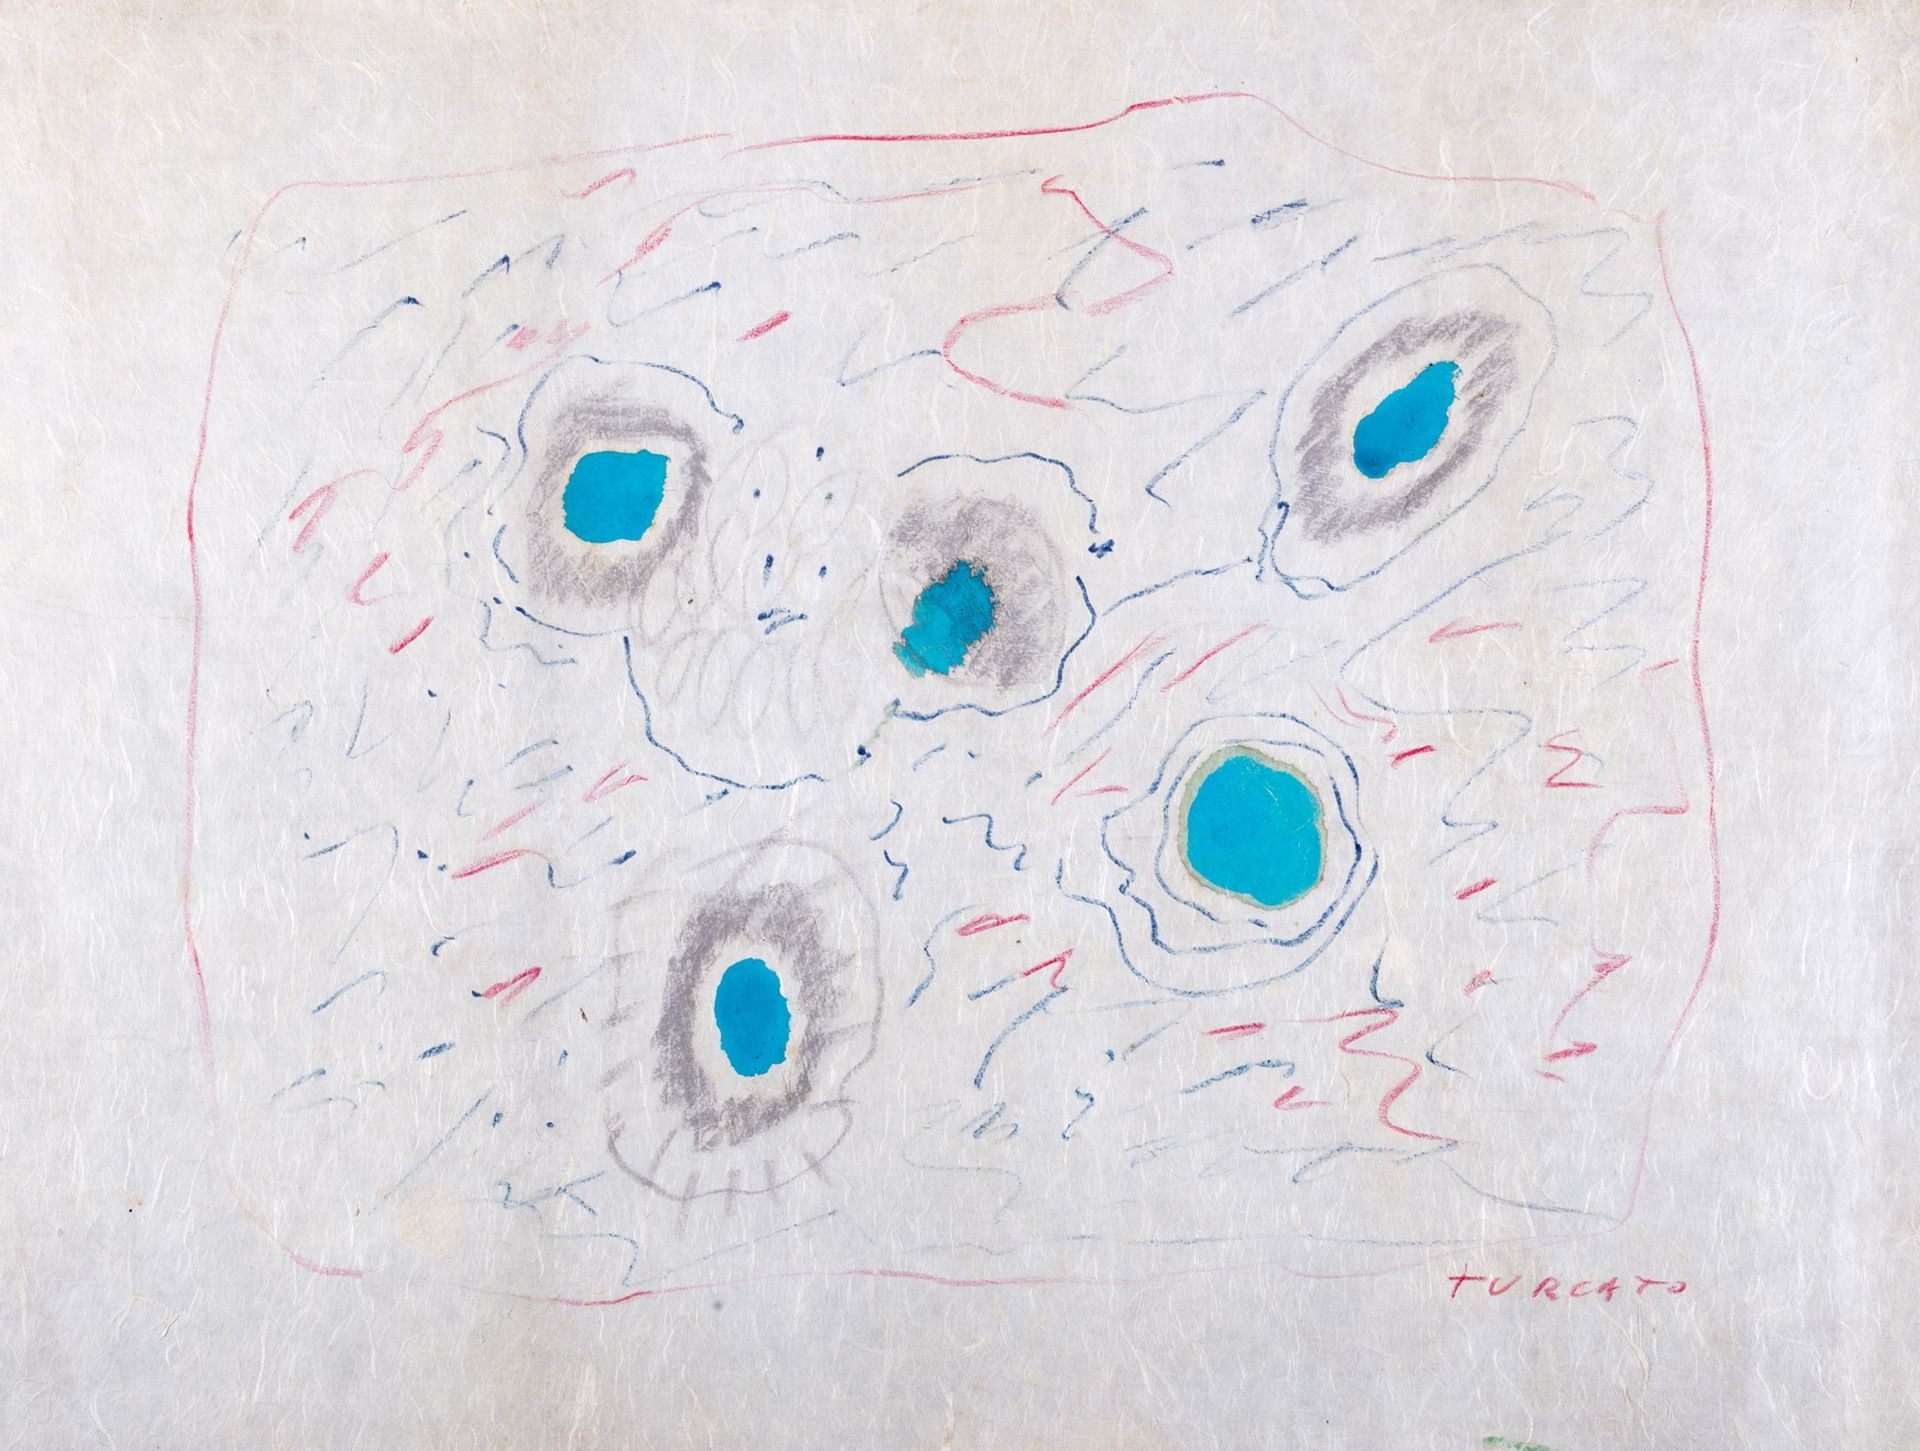 GIULIO TURCATO Biologique, 1969

tempera et pastels sur papier chiné
57,5 x 75,5&hellip;